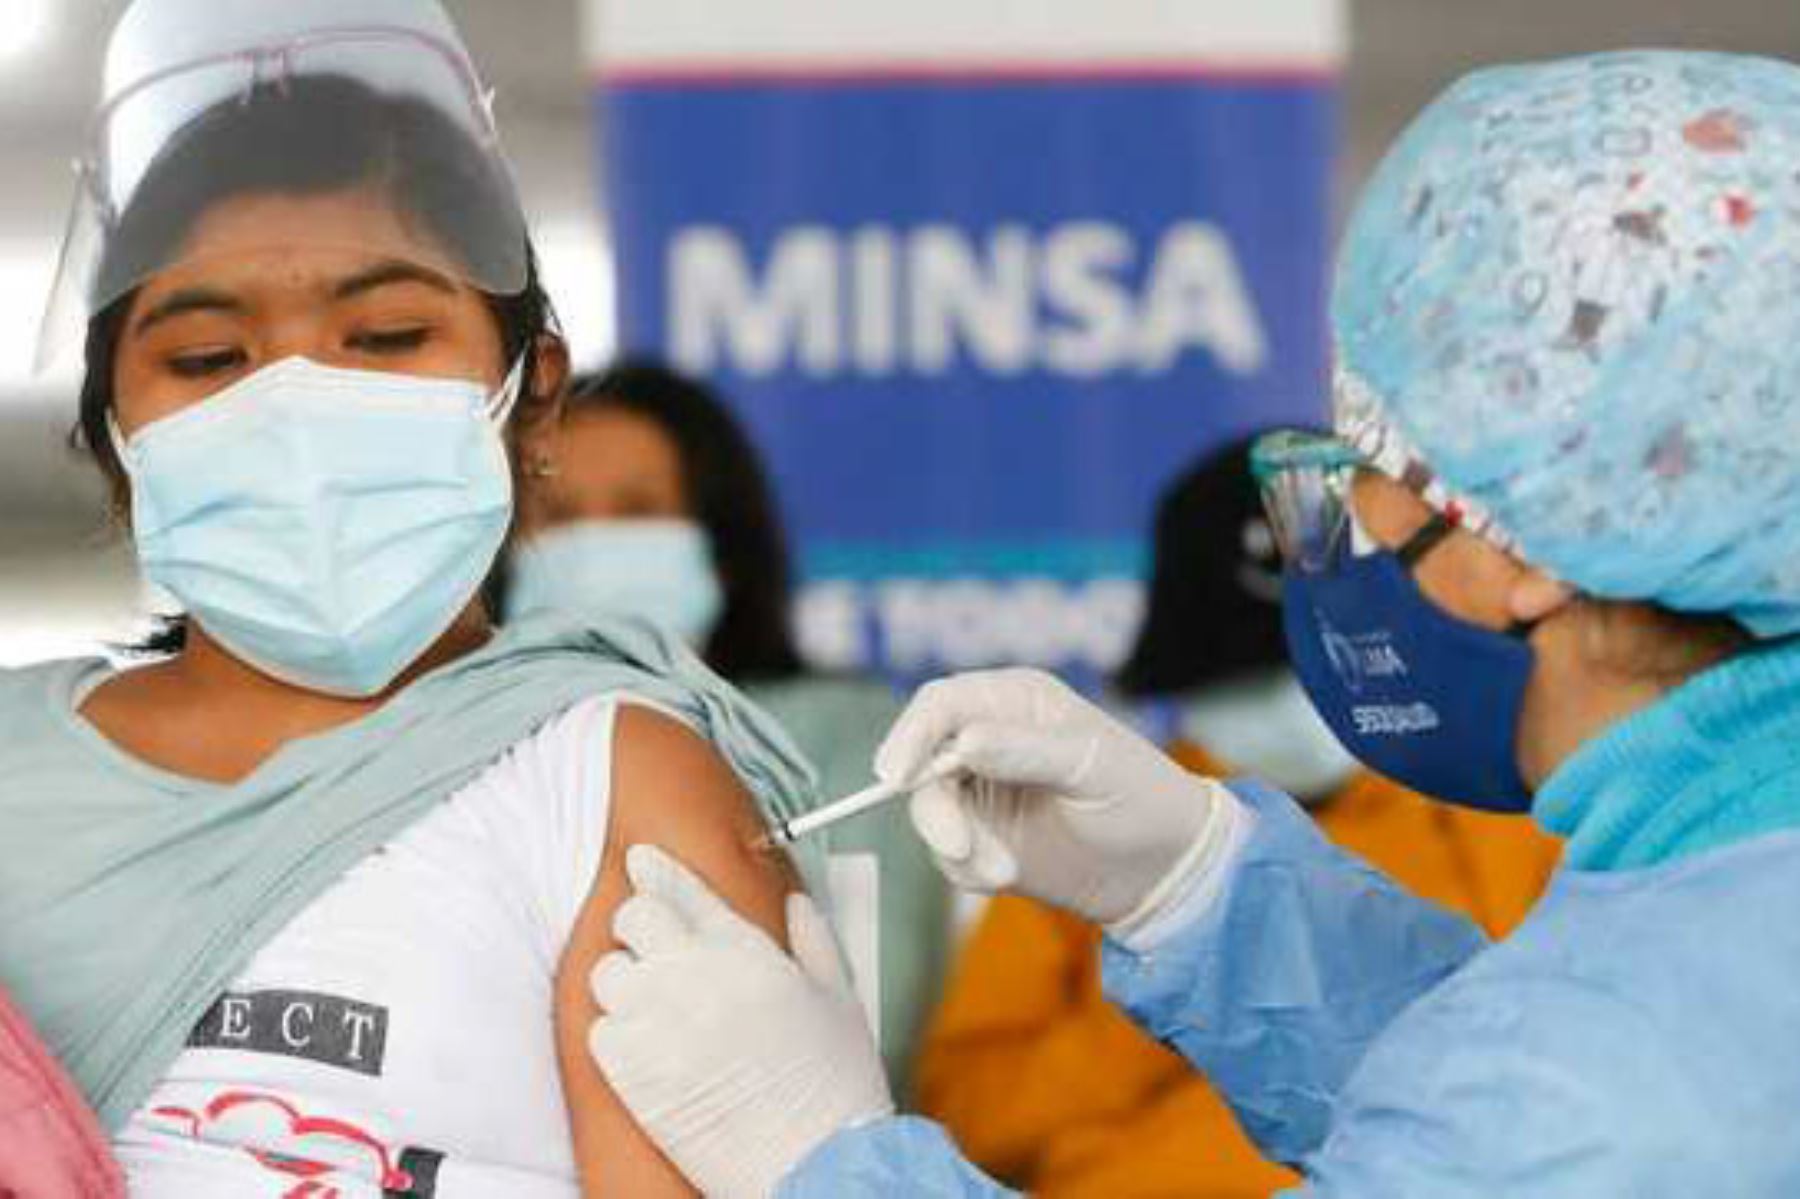 Minsa: Lima Centro superó el 80% de su población objetivo vacunada con dos dosis